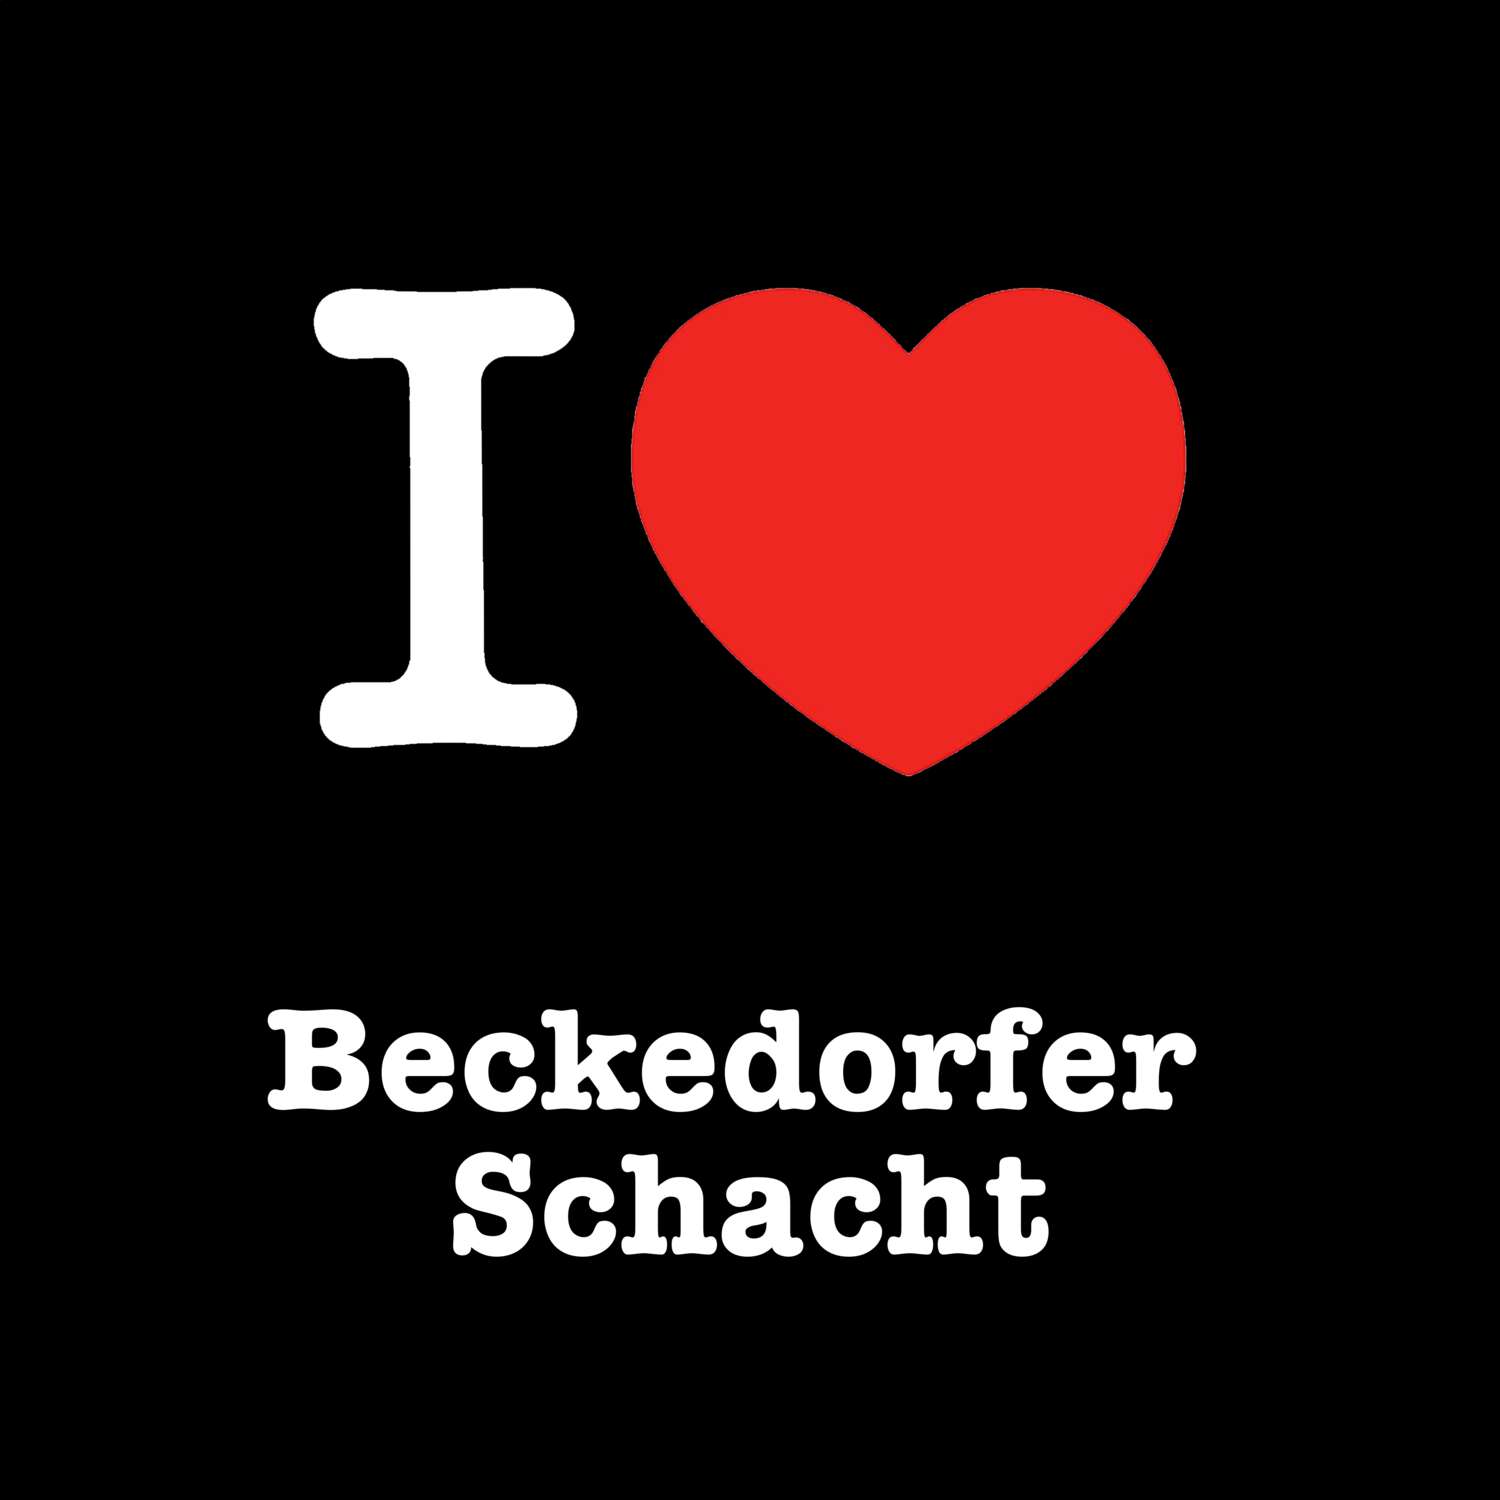 Beckedorfer Schacht T-Shirt »I love«